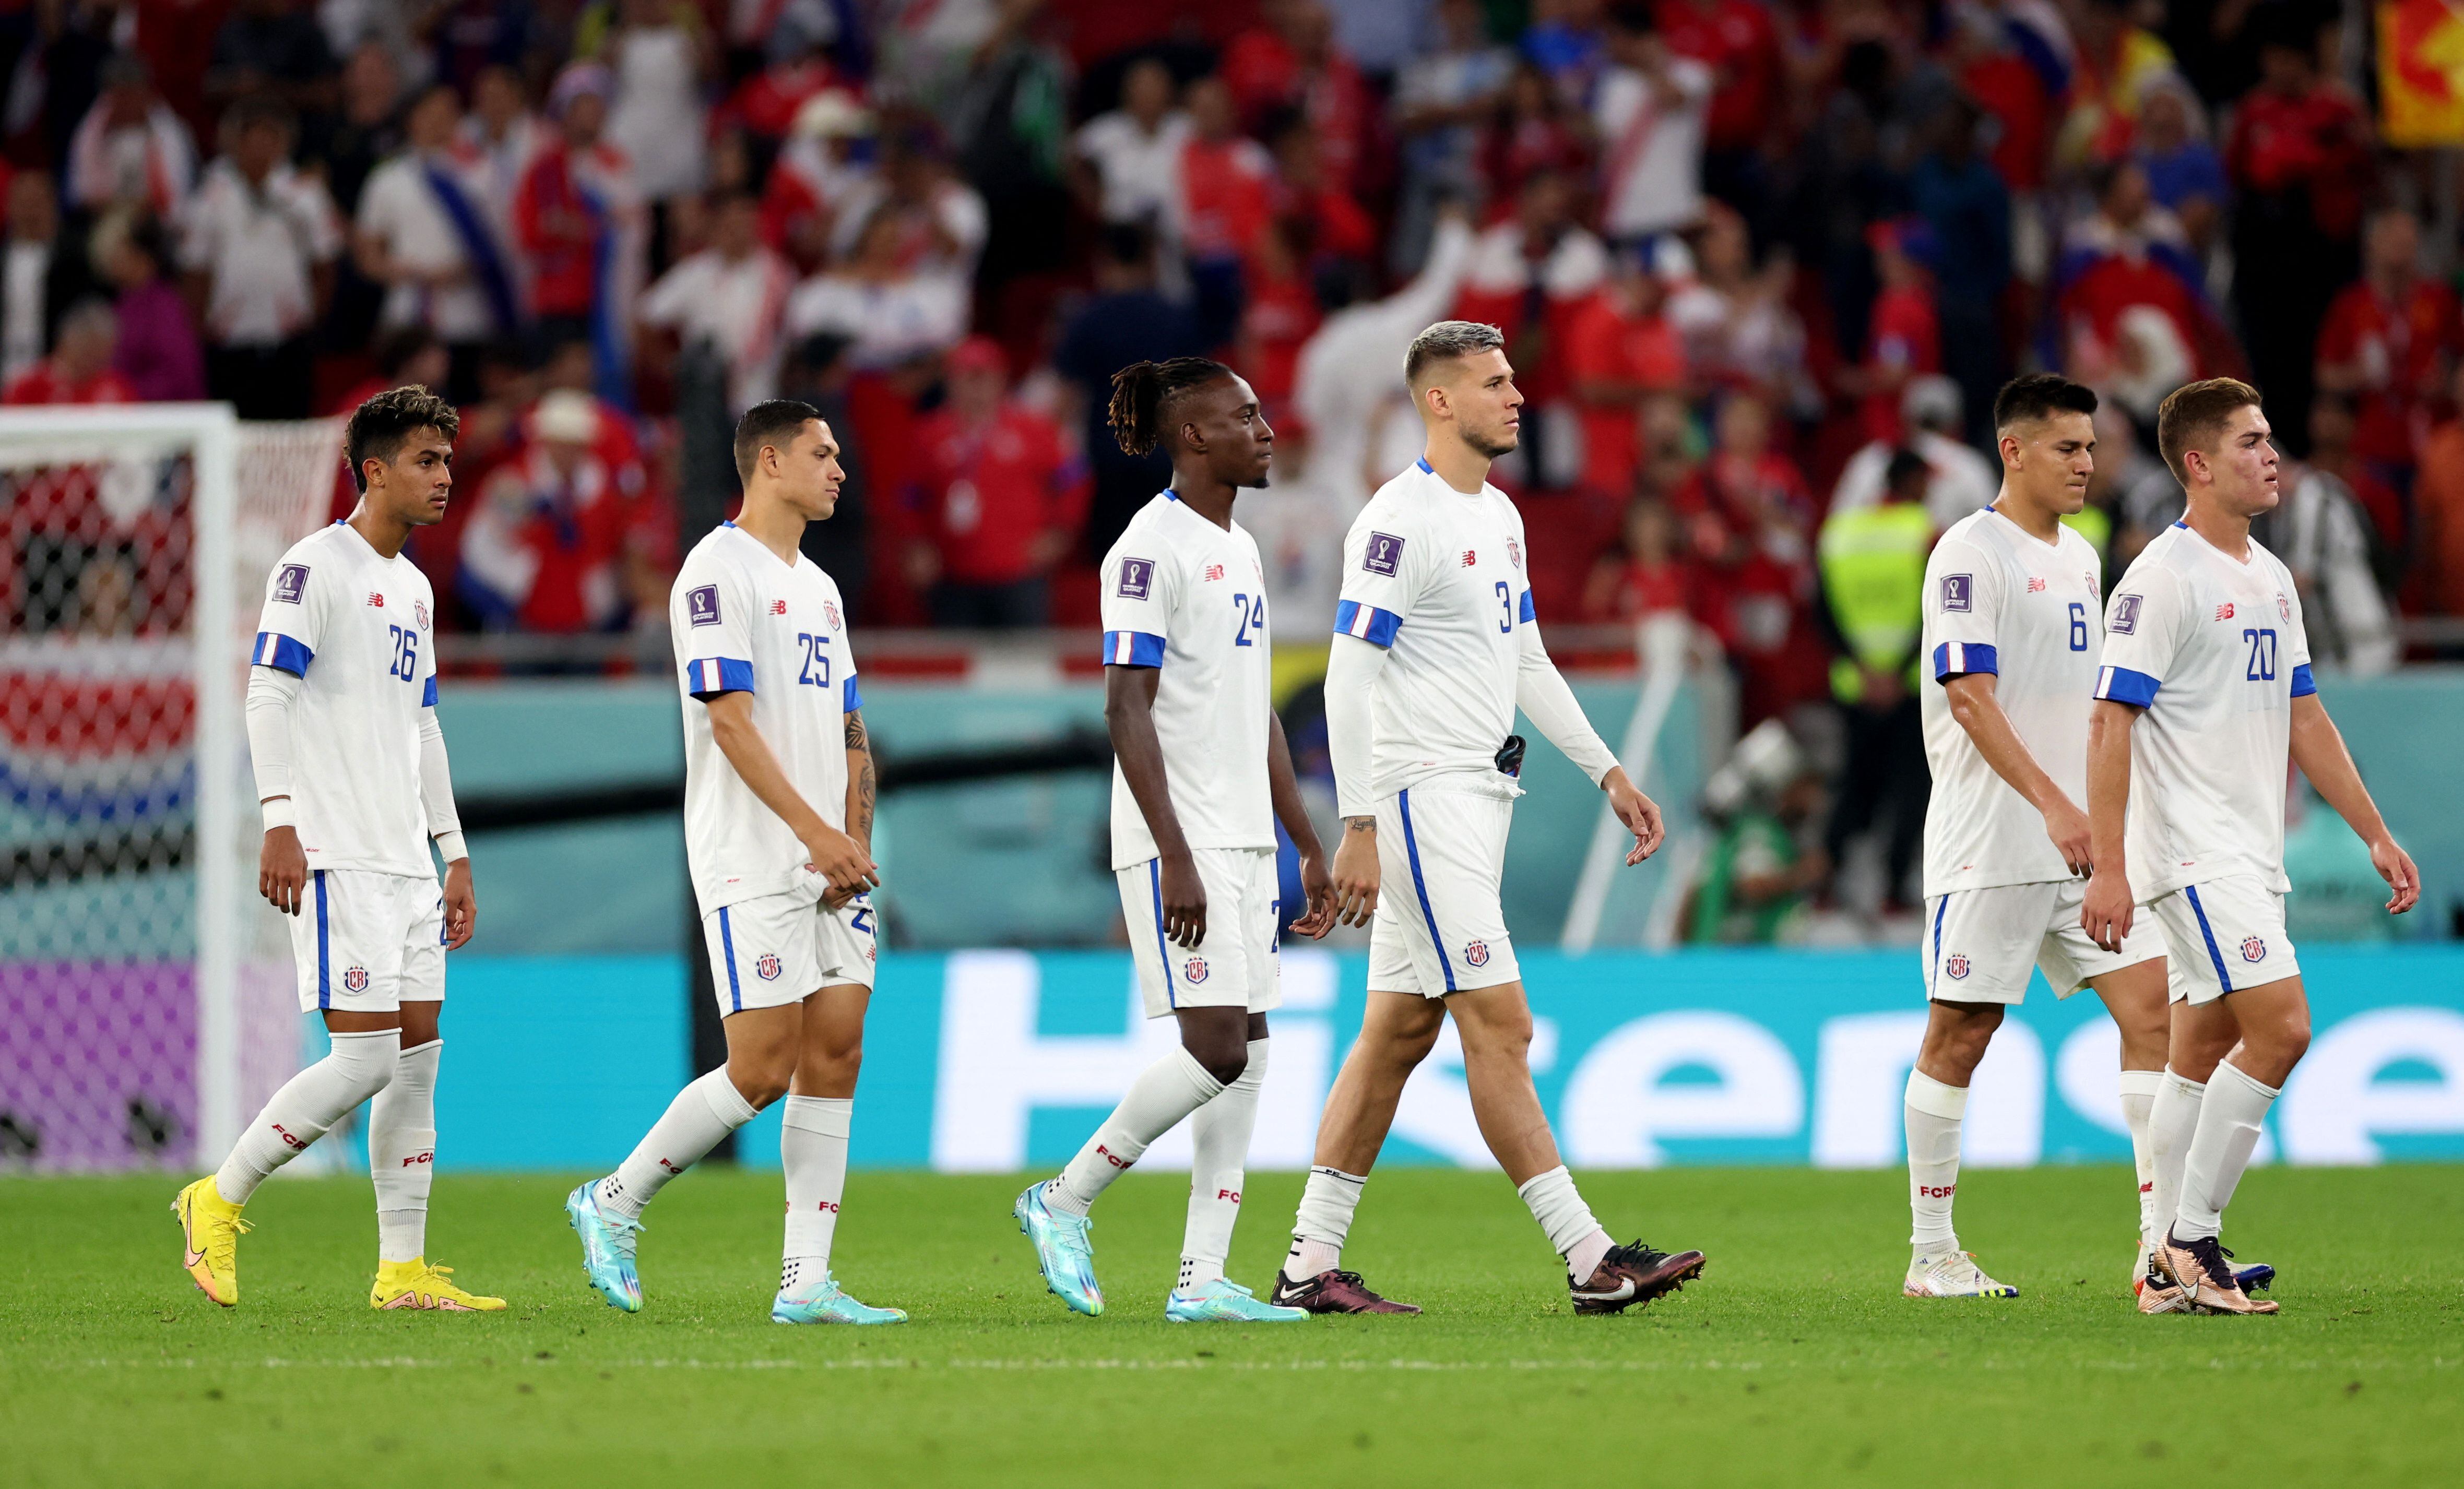 Costa Rica sufrió la peor derrota de su historia en un mundial. REUTERS/Carl Recine